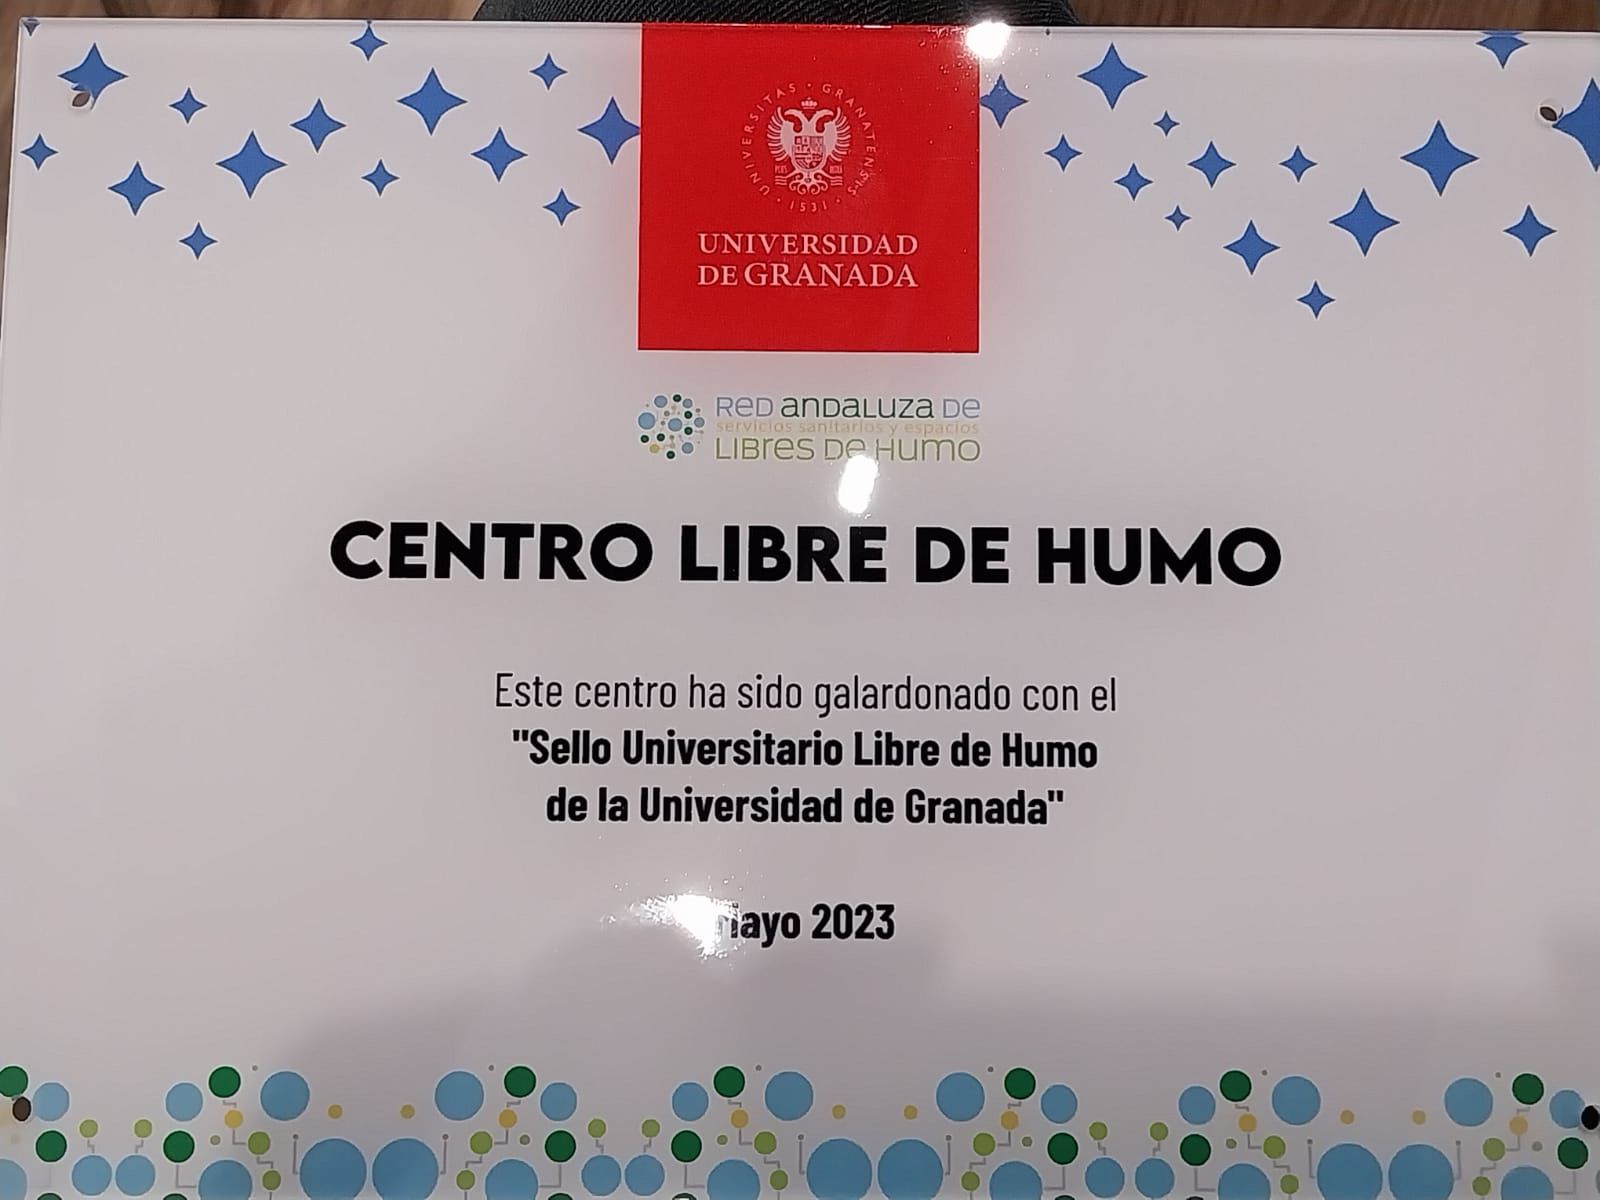 Sello Universitario Libre de Humo de la Universidad de Granada